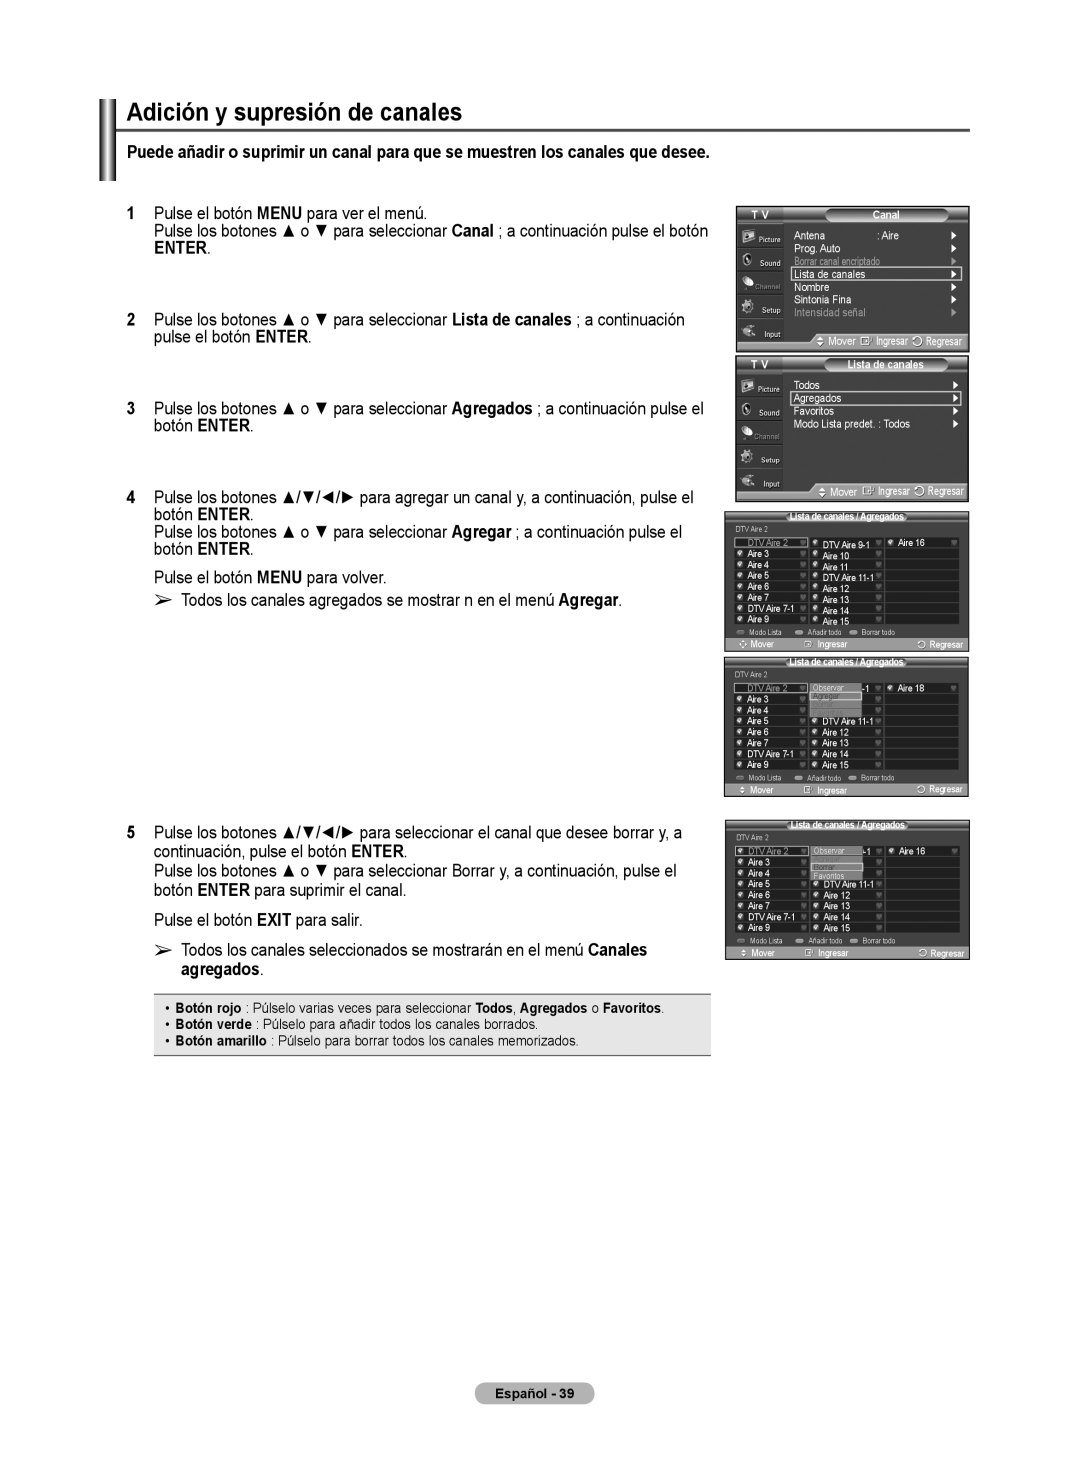 Samsung 460 user manual Adición y supresión de canales, Enter, Botón verde Púlselo para añadir todos los canales borrados 